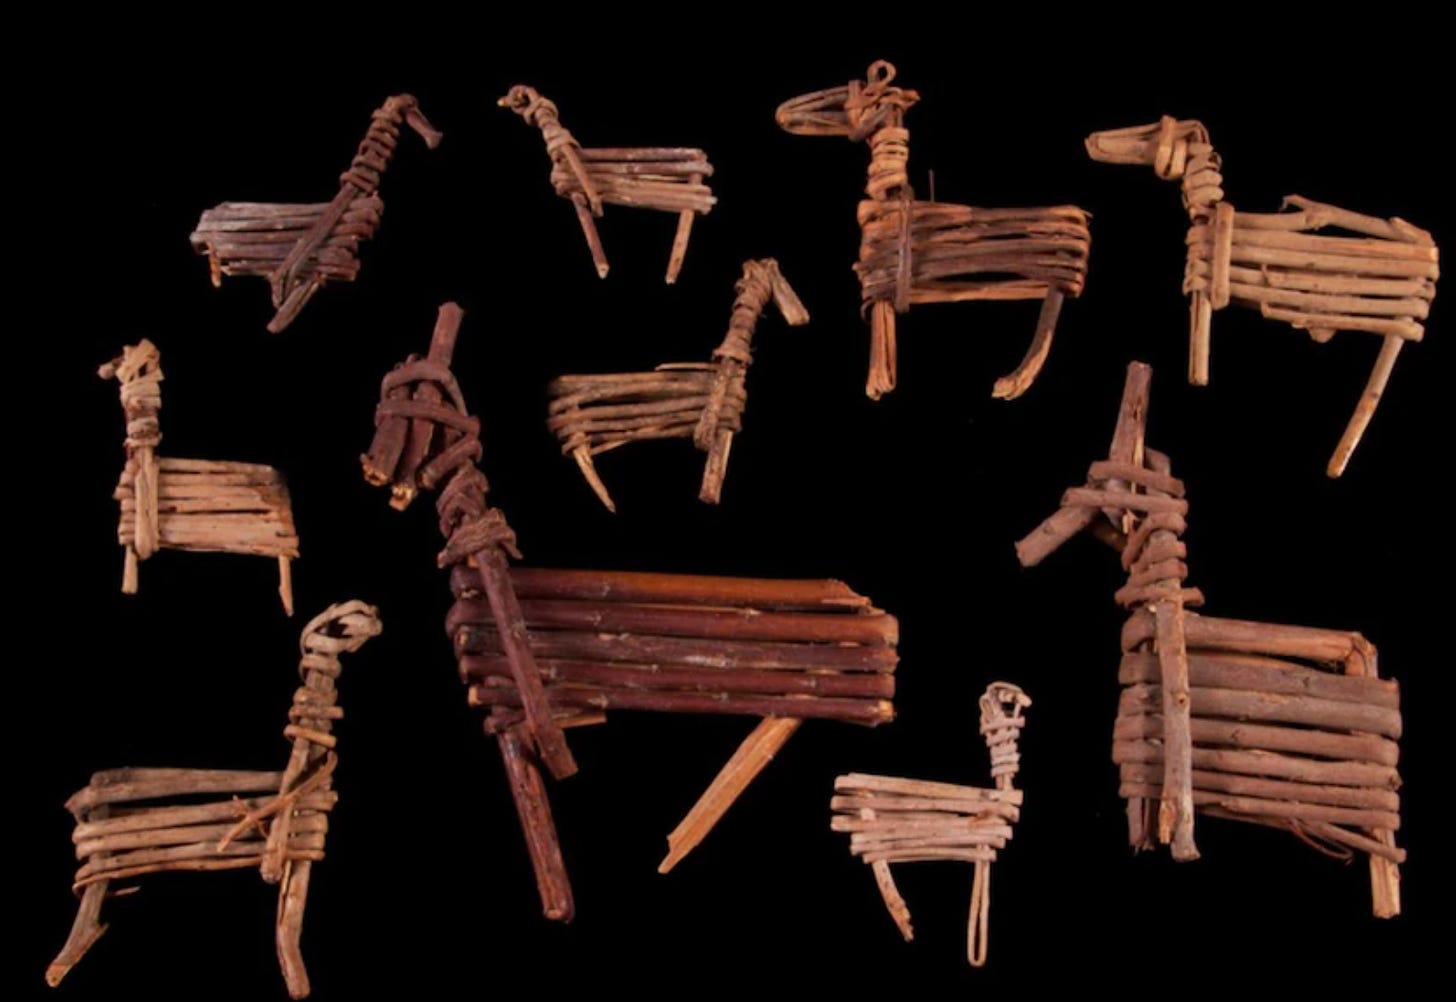 Una imagen de los muñequitos con forma de caballos hechos con ramas hace más de 2000 años